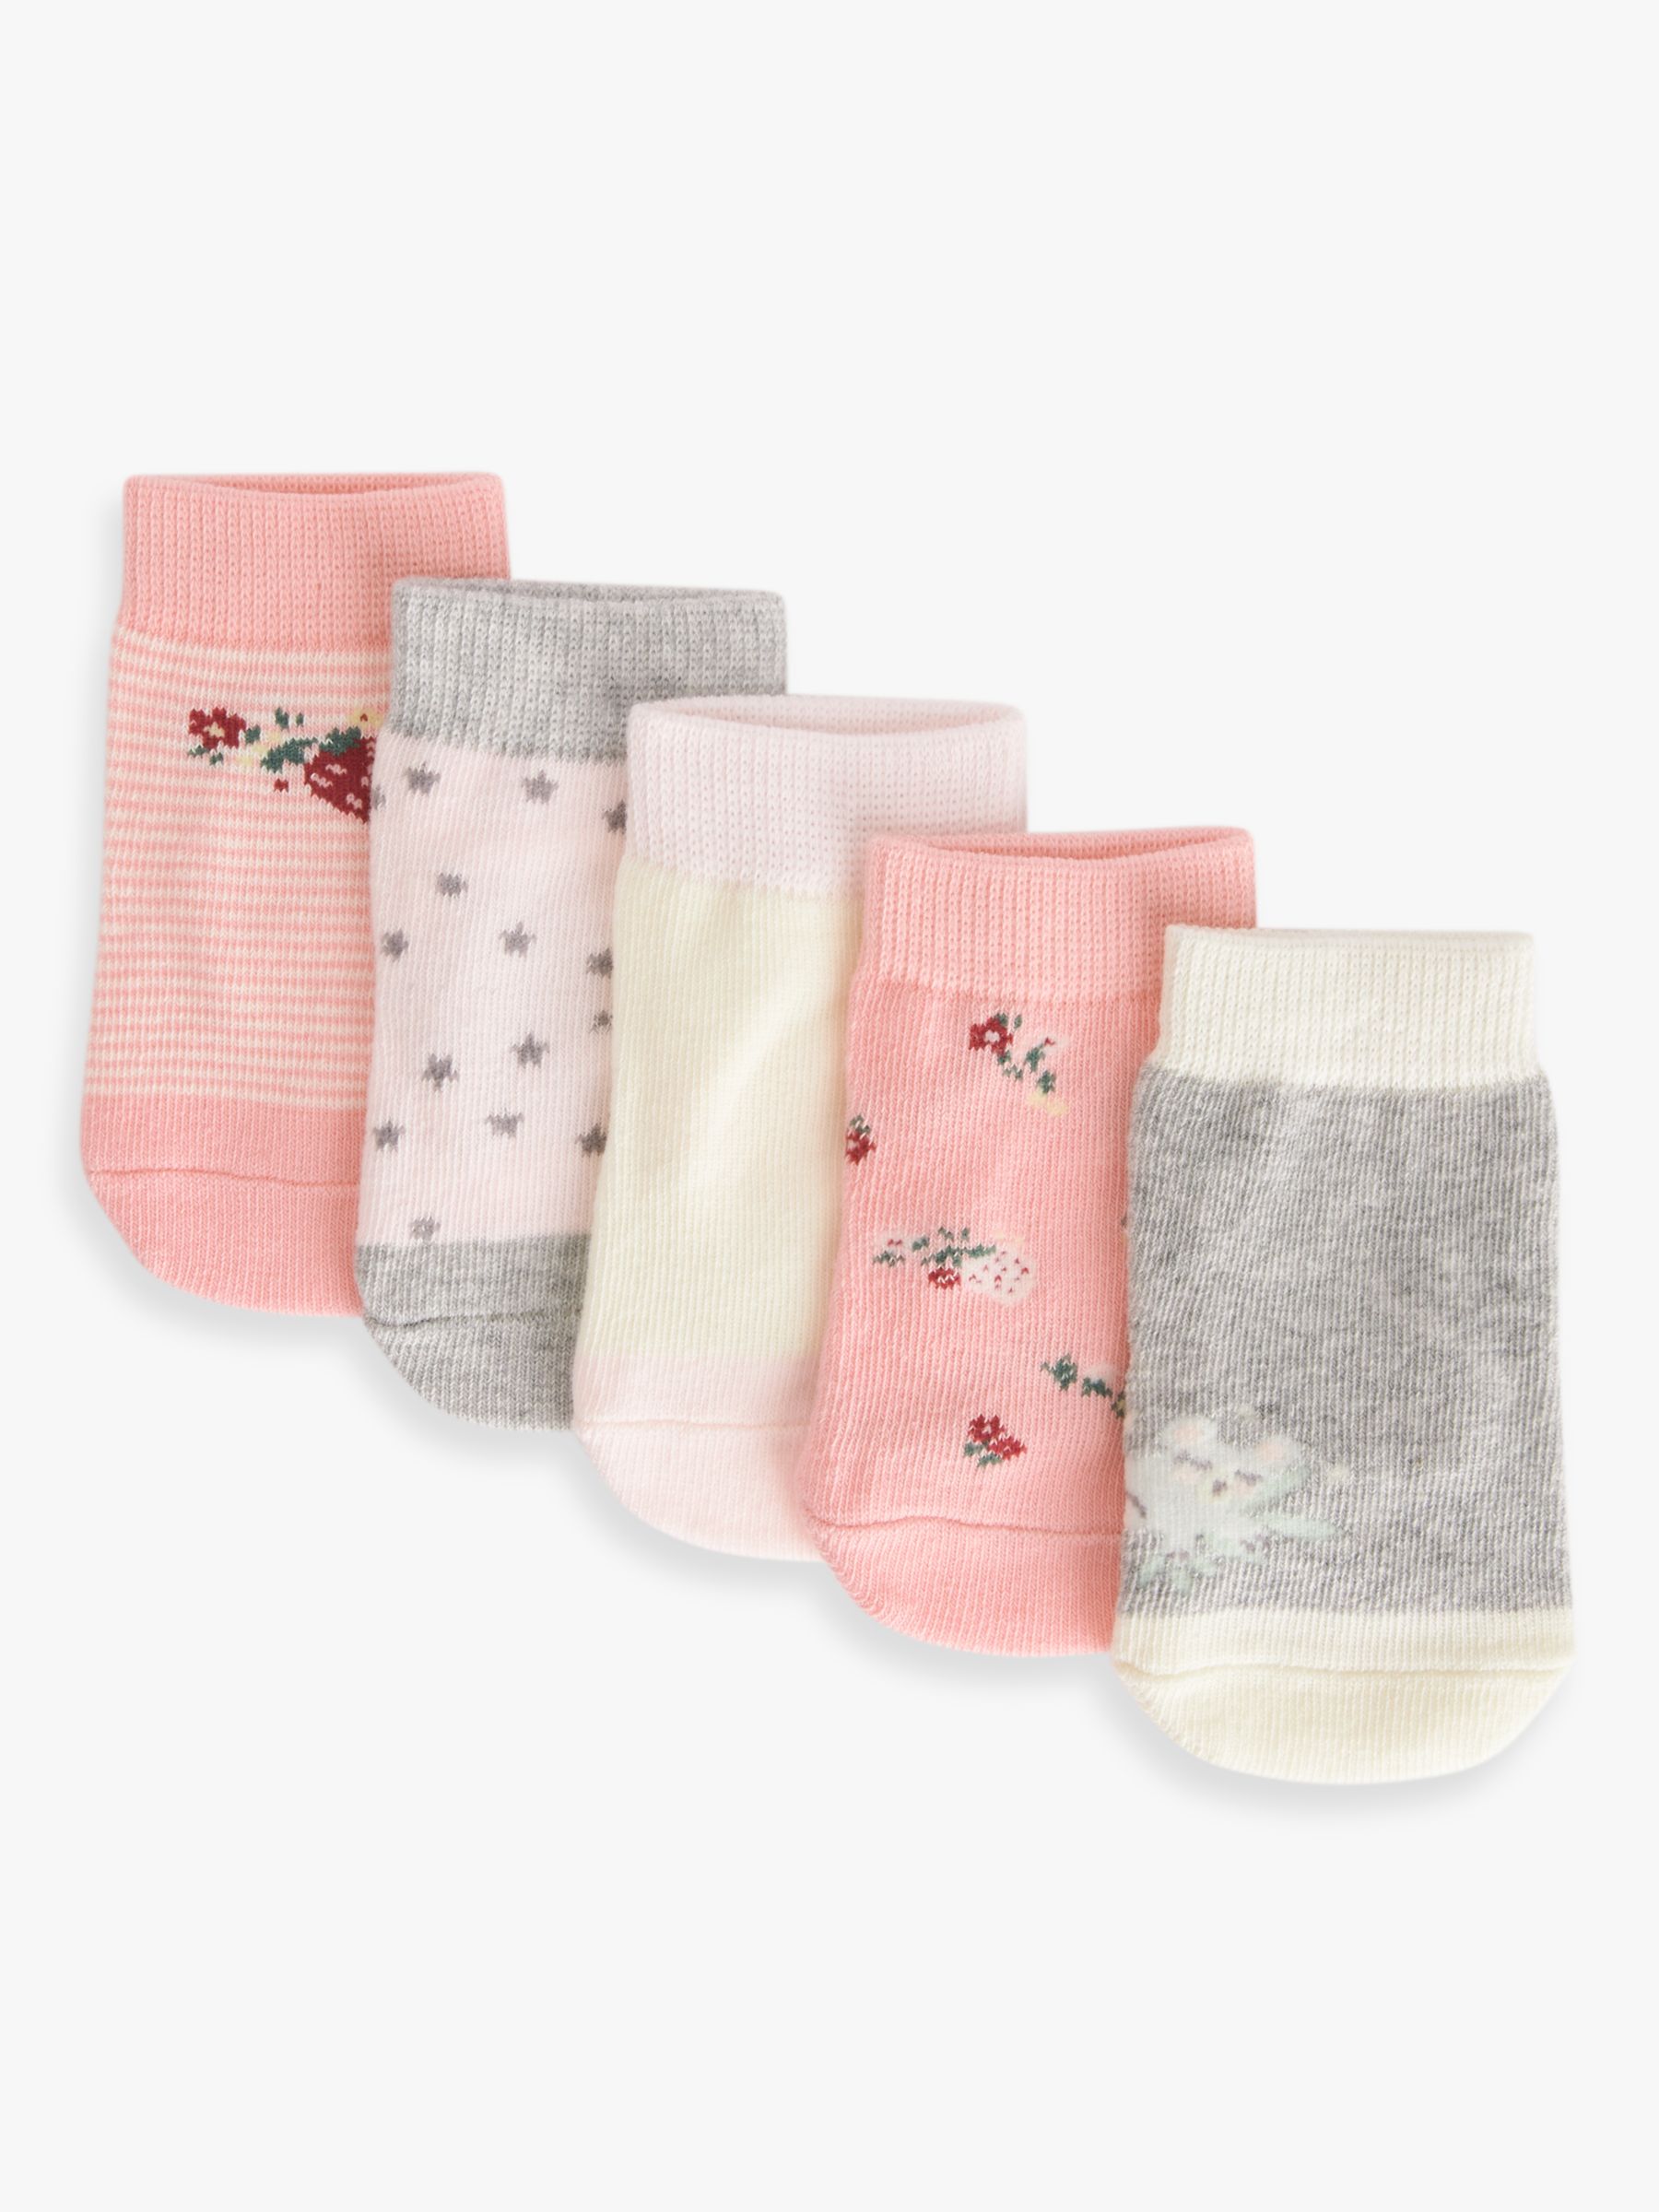 John Lewis Baby Organic Cotton Rich Koala Star Socks, Pack of 5, Pink ...